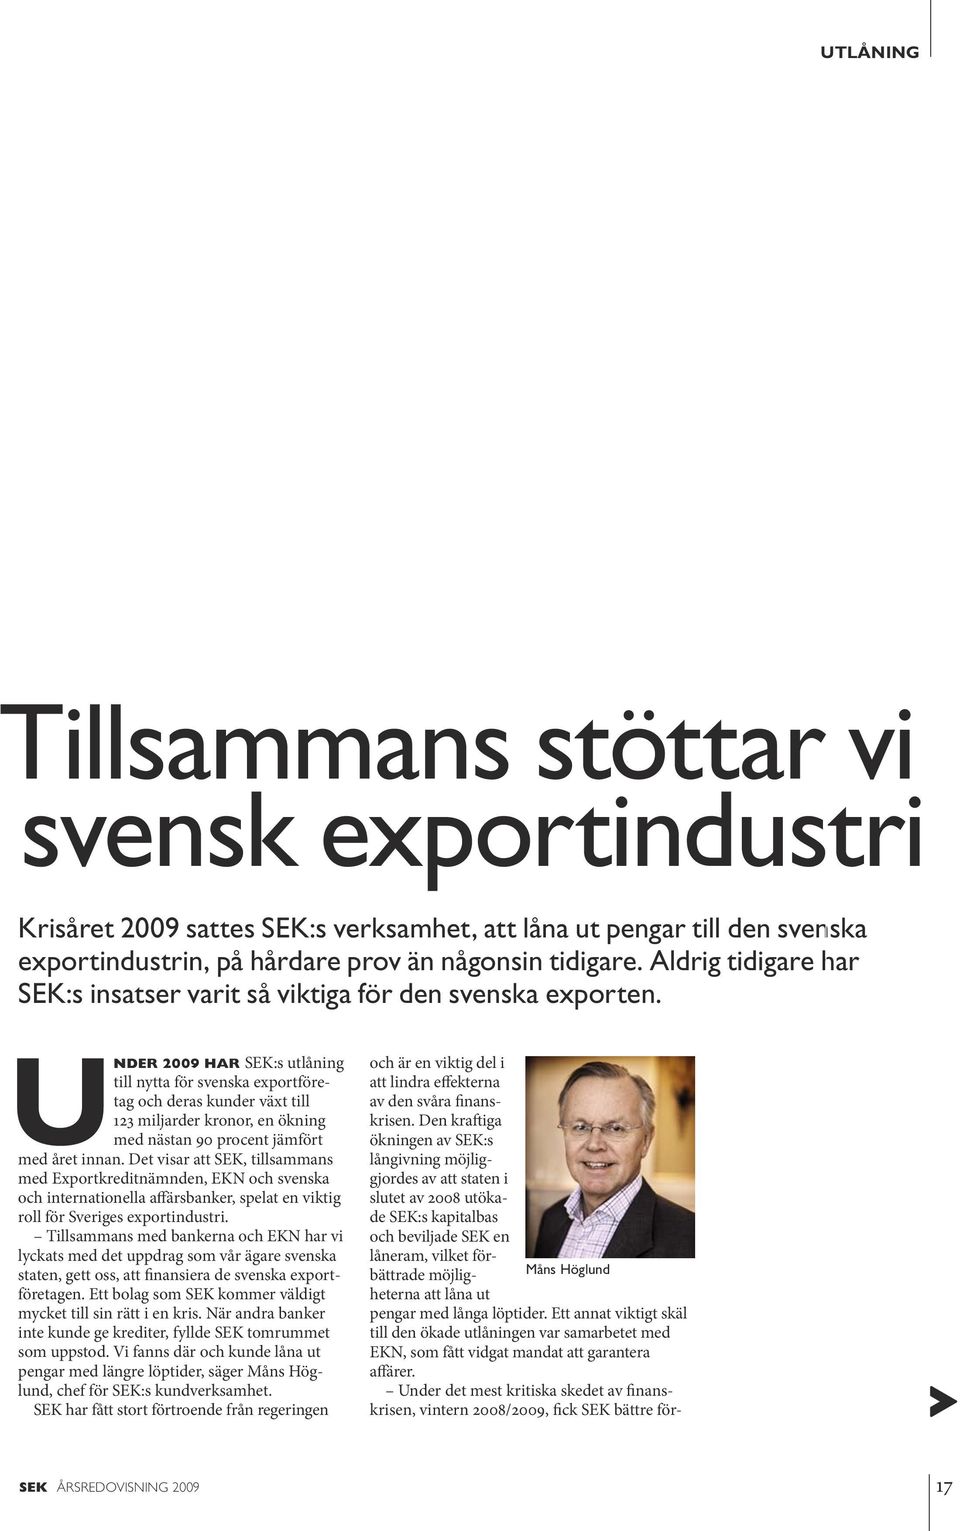 Under 2009 har SEK:s utlåning till nytta för svenska exportföretag och deras kunder växt till 123 miljarder kronor, en ökning med nästan 90 procent jämfört med året innan.